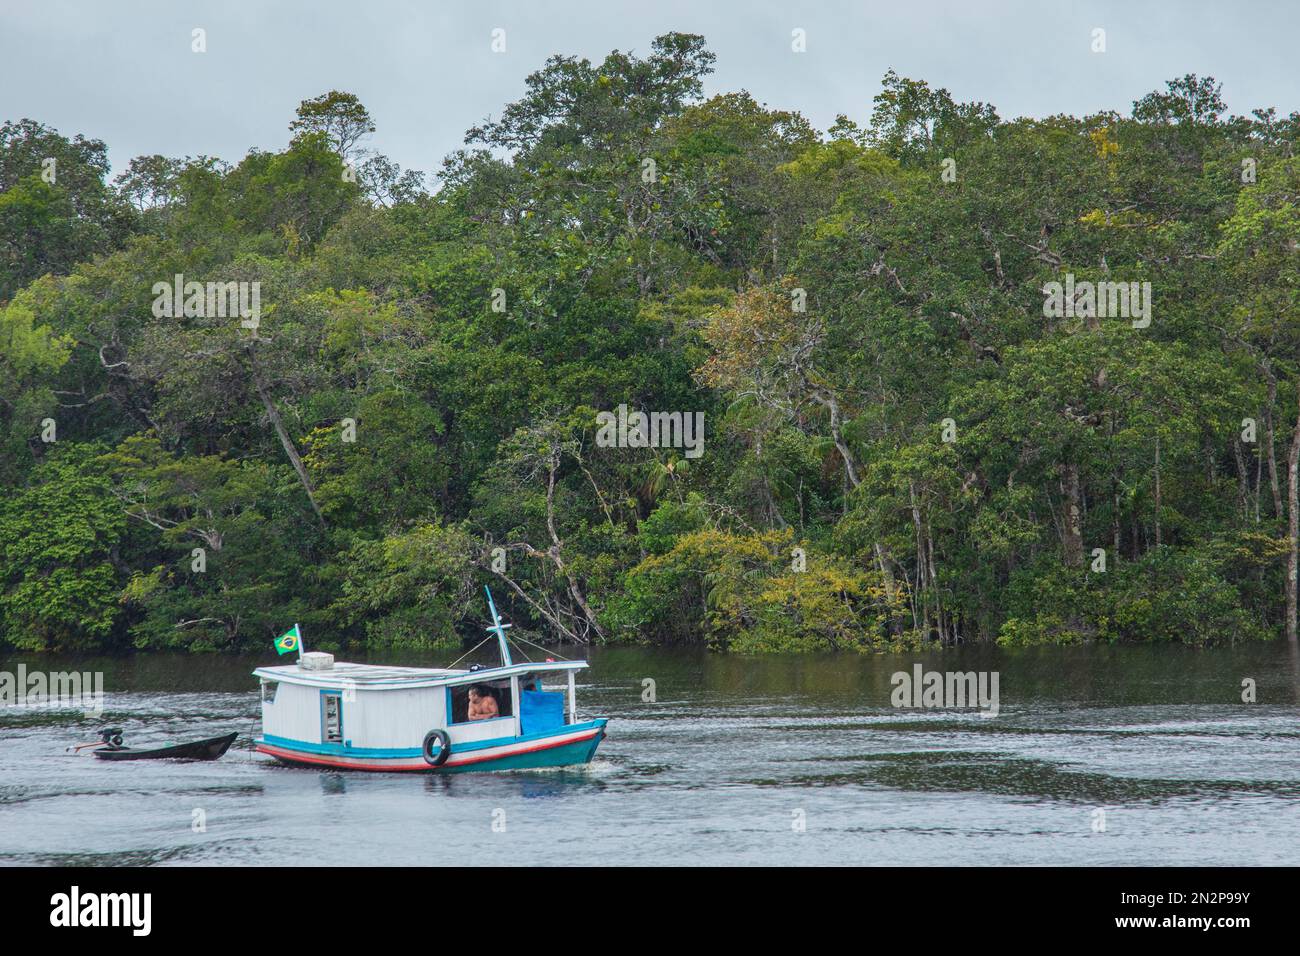 Un bateau de rivière local en bois tractant un lancement sur le Rio Negro. Forêt tropicale derrière. Brésil, Amazone, bassin de Rio Negro. Couloir écologique du centre de l'Amazonie Banque D'Images